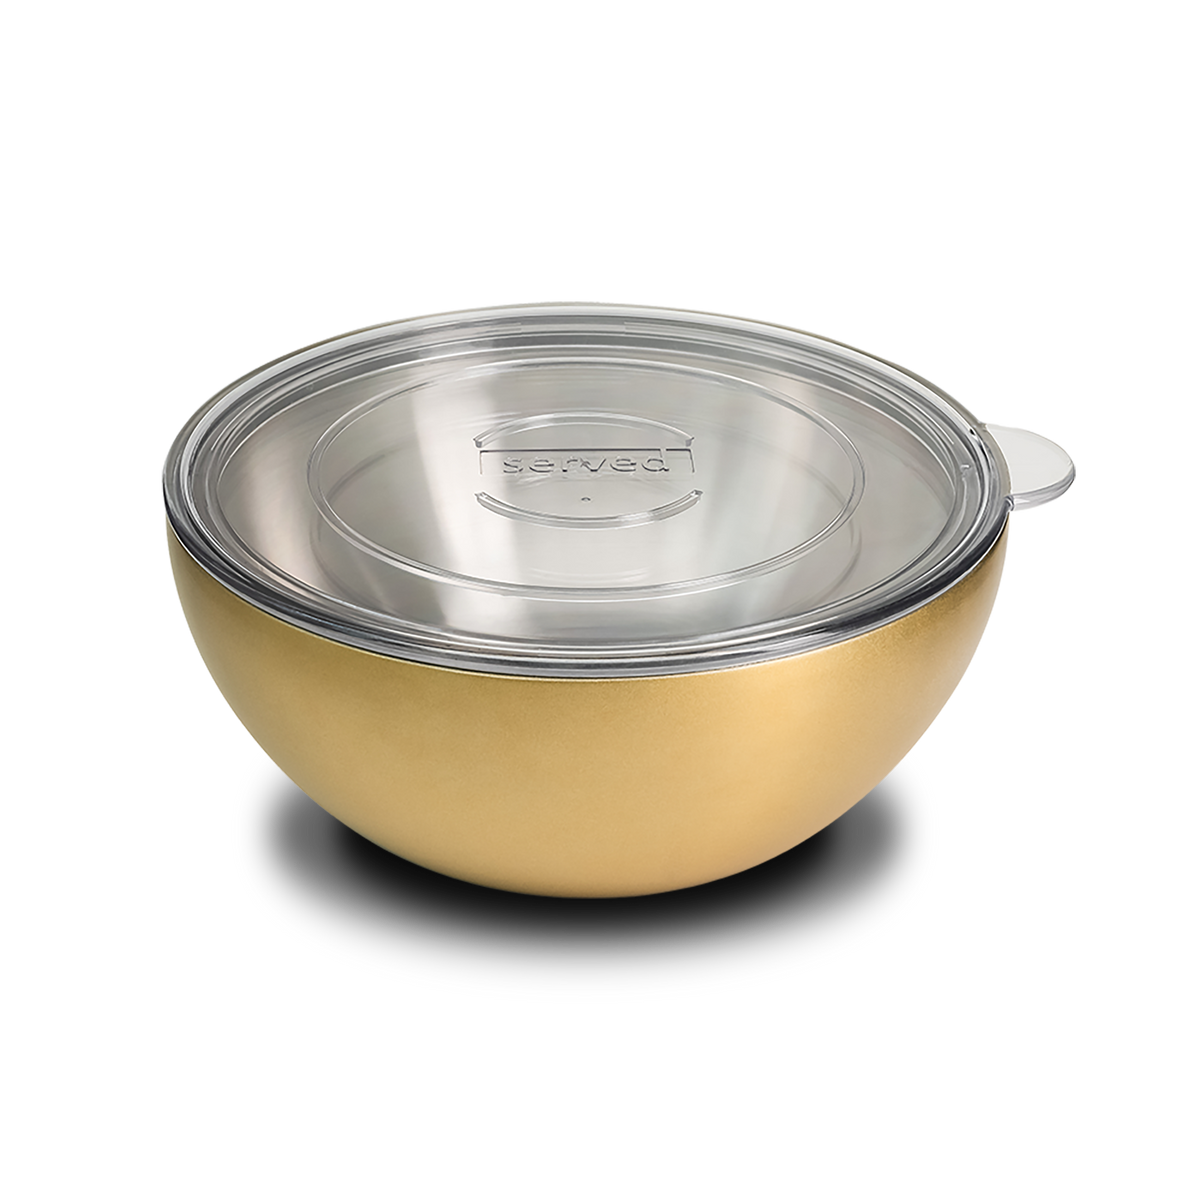 http://shopserved.com/cdn/shop/products/served-large-bowl-Golden-2048px_1200x1200.png?v=1670295206